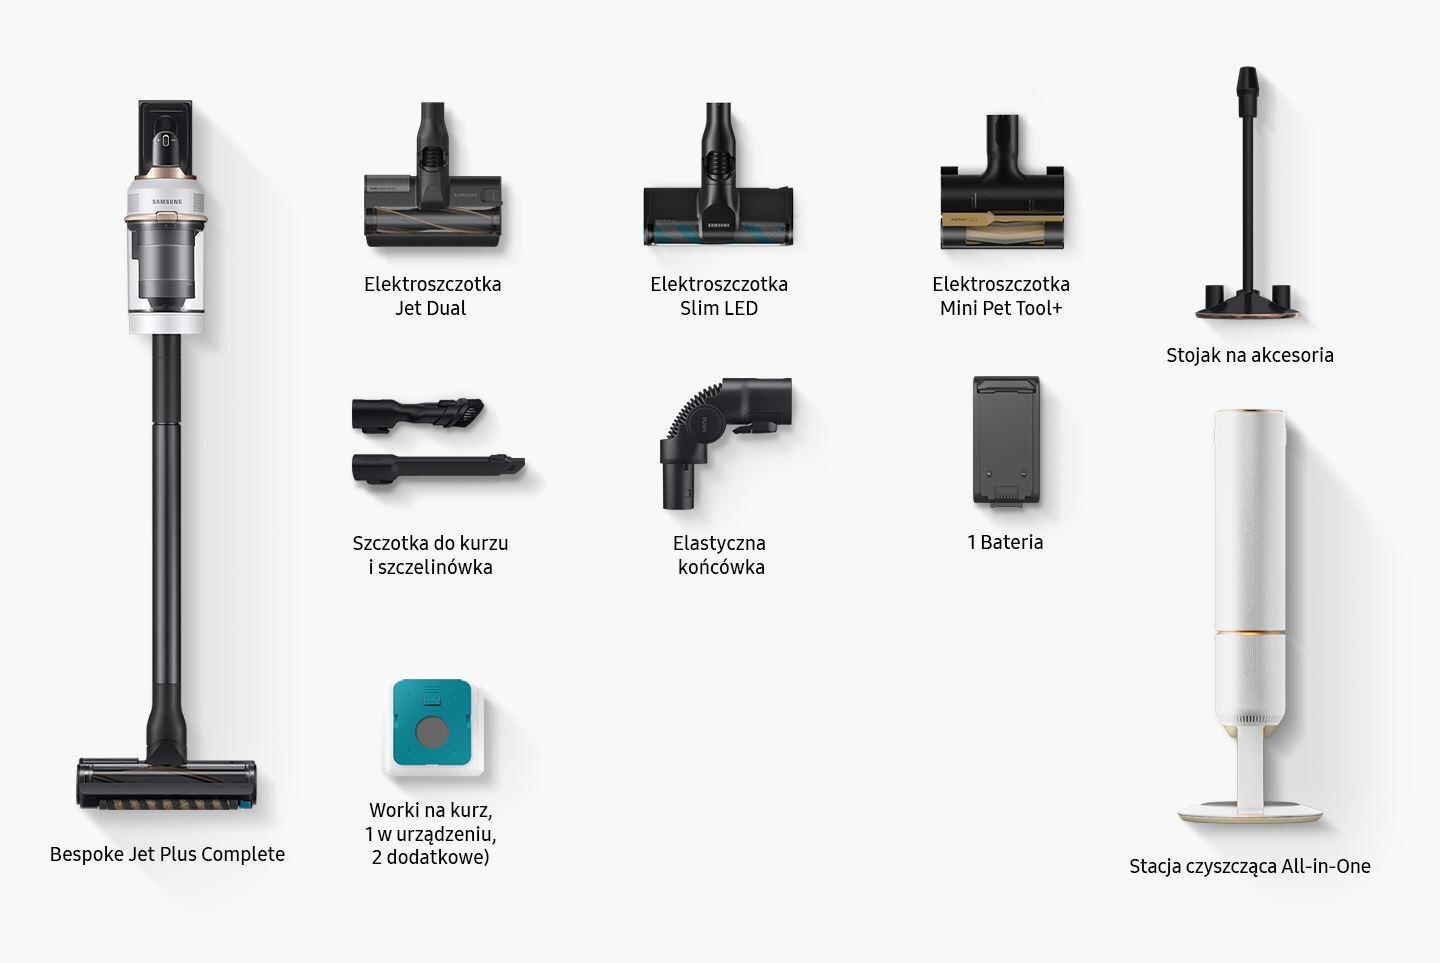 Zdjęcie ze wszystkimi elementami i akcesoriami, które są załączone do zestawu: Samsung